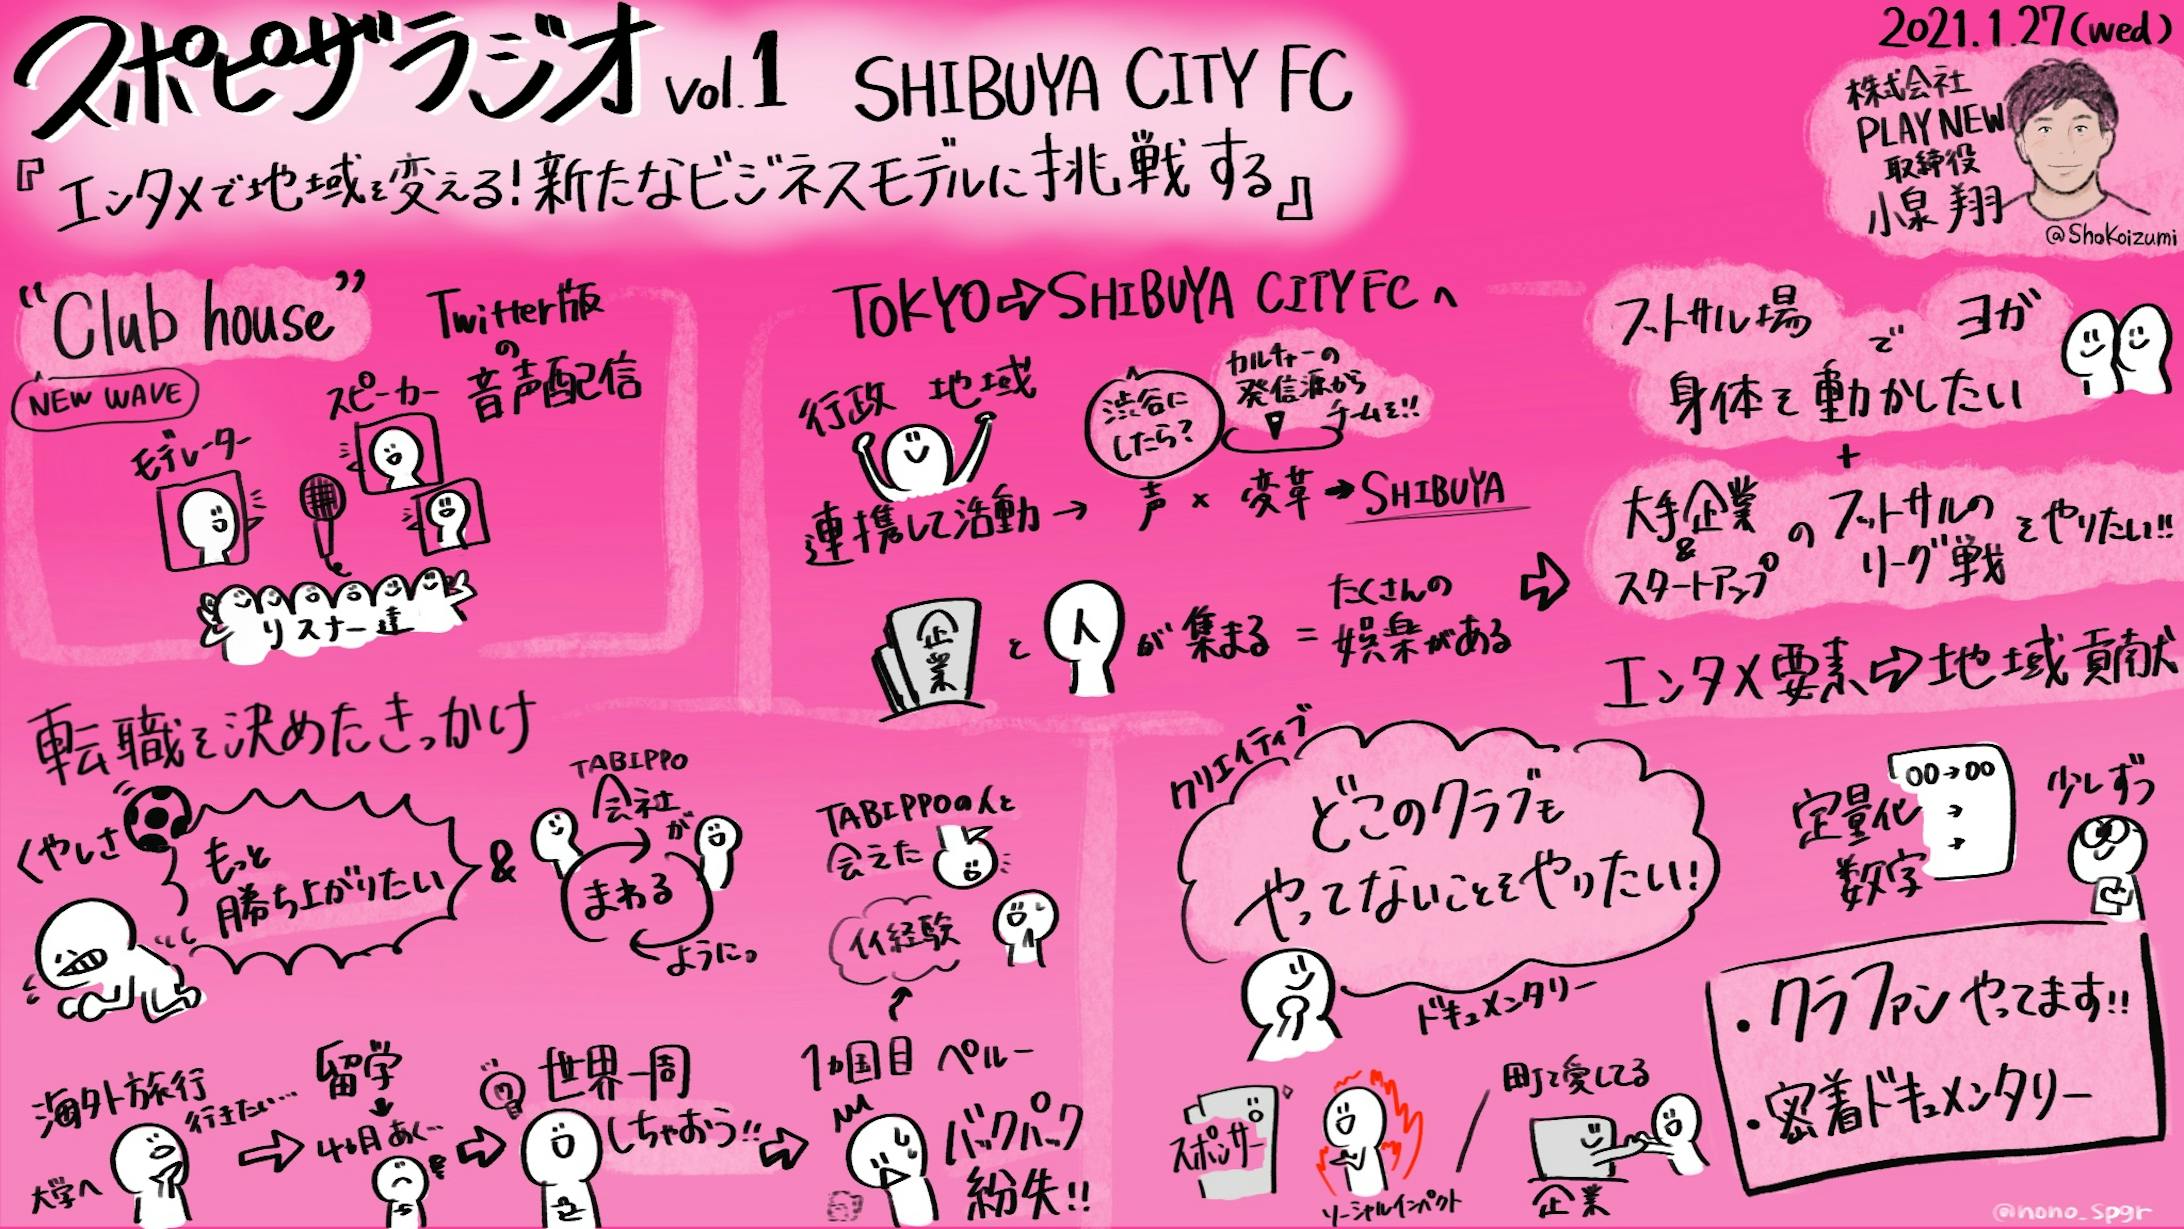 スポピザラジオ vol.1『エンタメで地域を変える！新たなビジネスモデルに挑戦する SHIBUYA CITY FC』小泉 翔氏-1